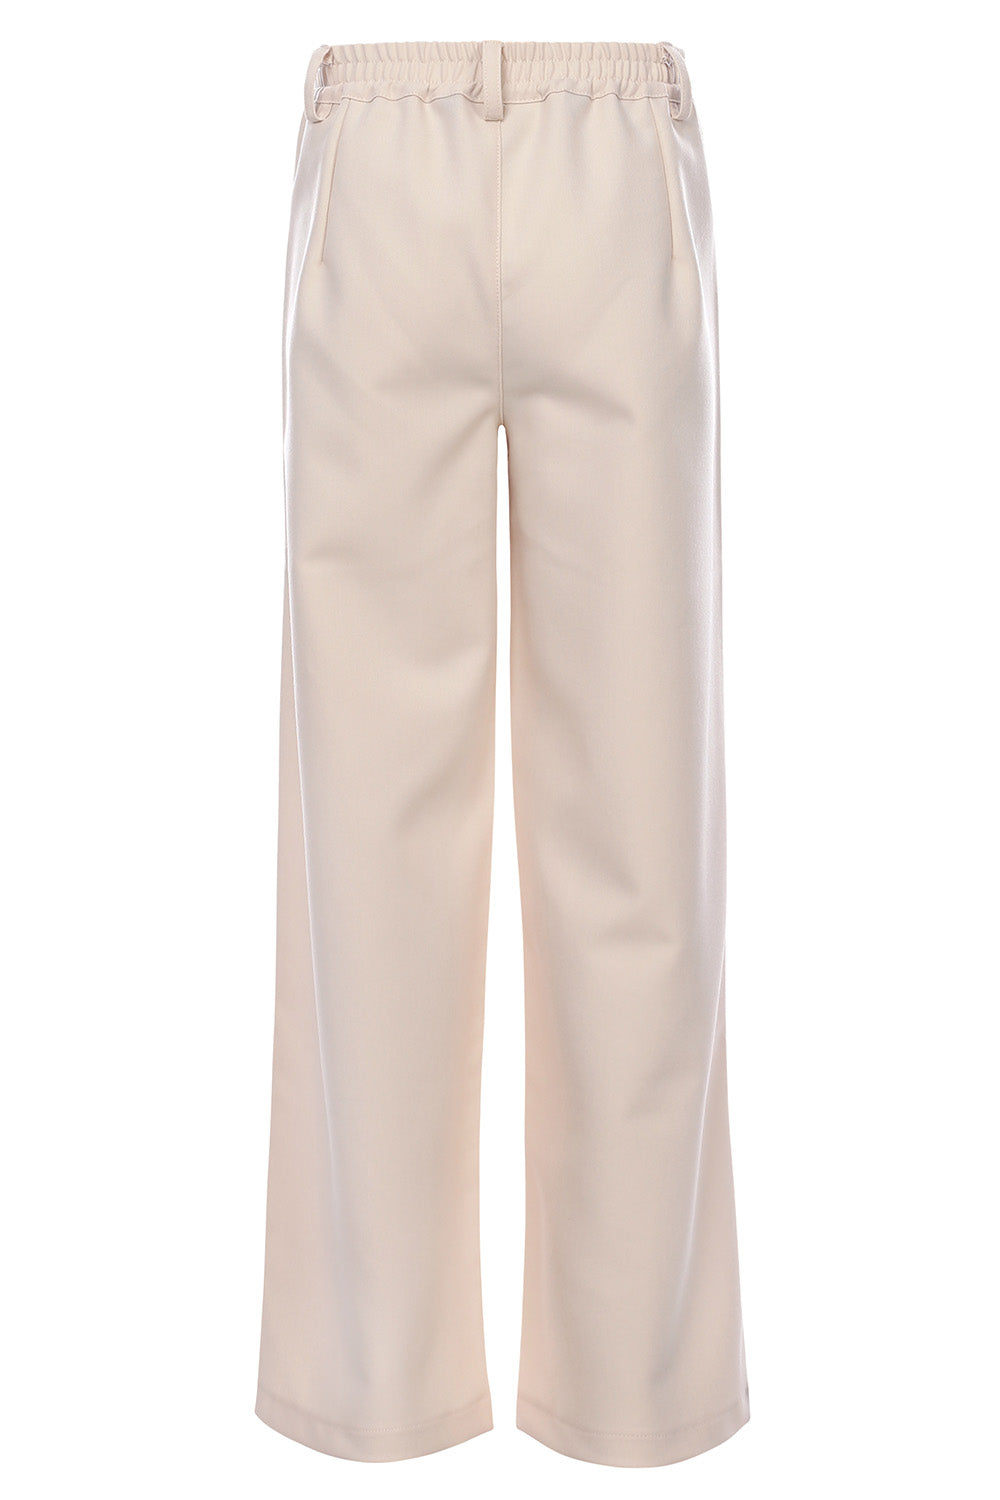 Meisjes Pantalon van LOOXS 10sixteen in de kleur Creamy in maat 170-176.